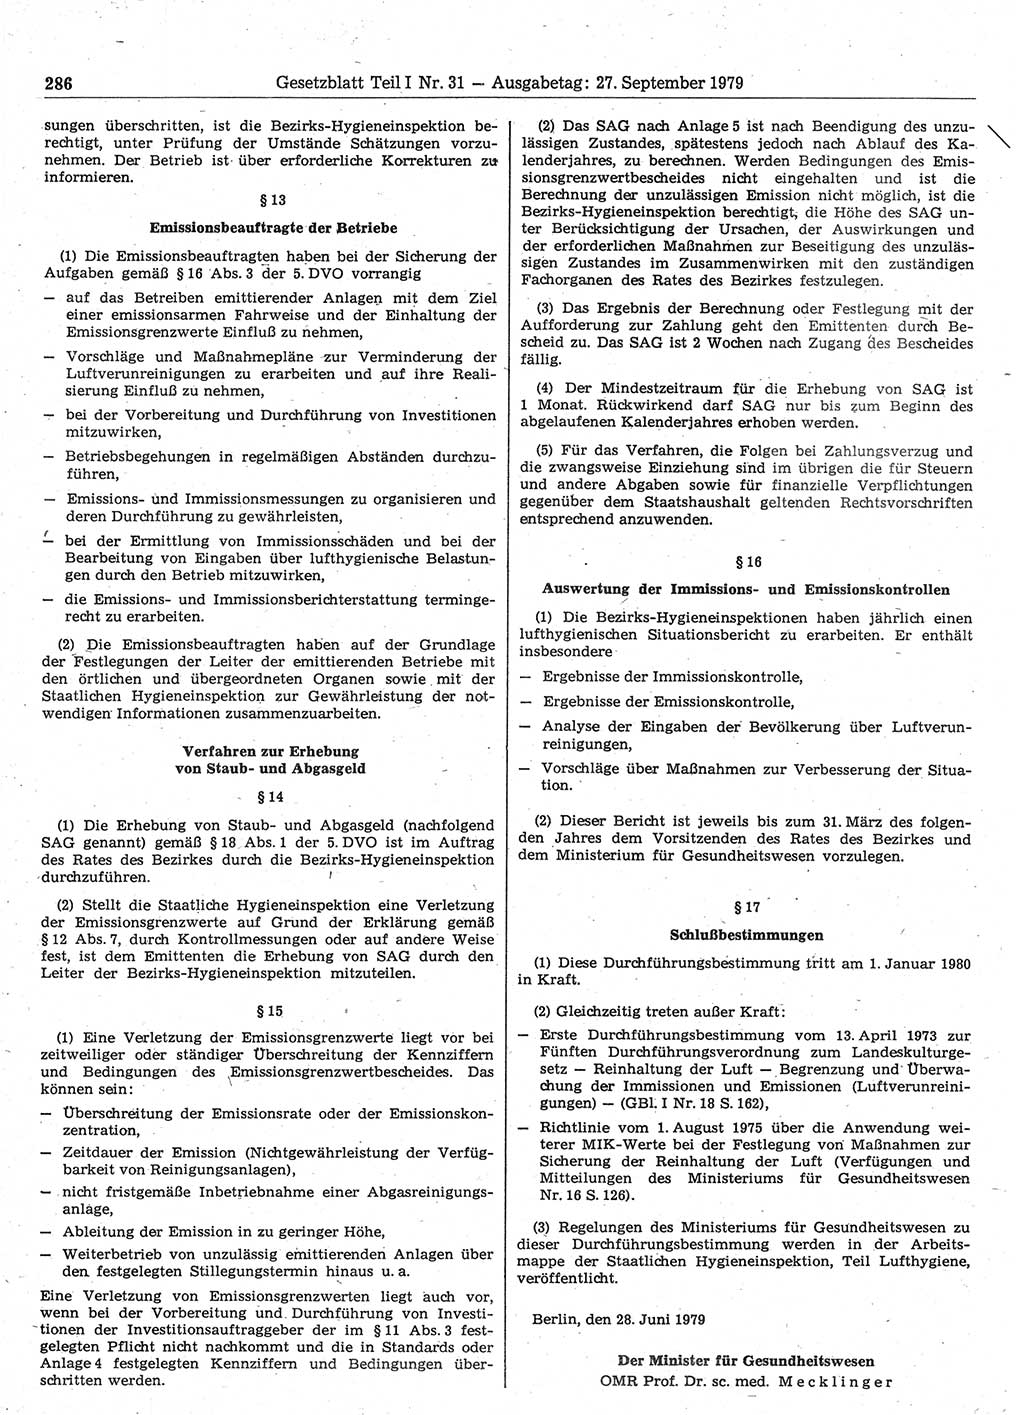 Gesetzblatt (GBl.) der Deutschen Demokratischen Republik (DDR) Teil Ⅰ 1979, Seite 286 (GBl. DDR Ⅰ 1979, S. 286)